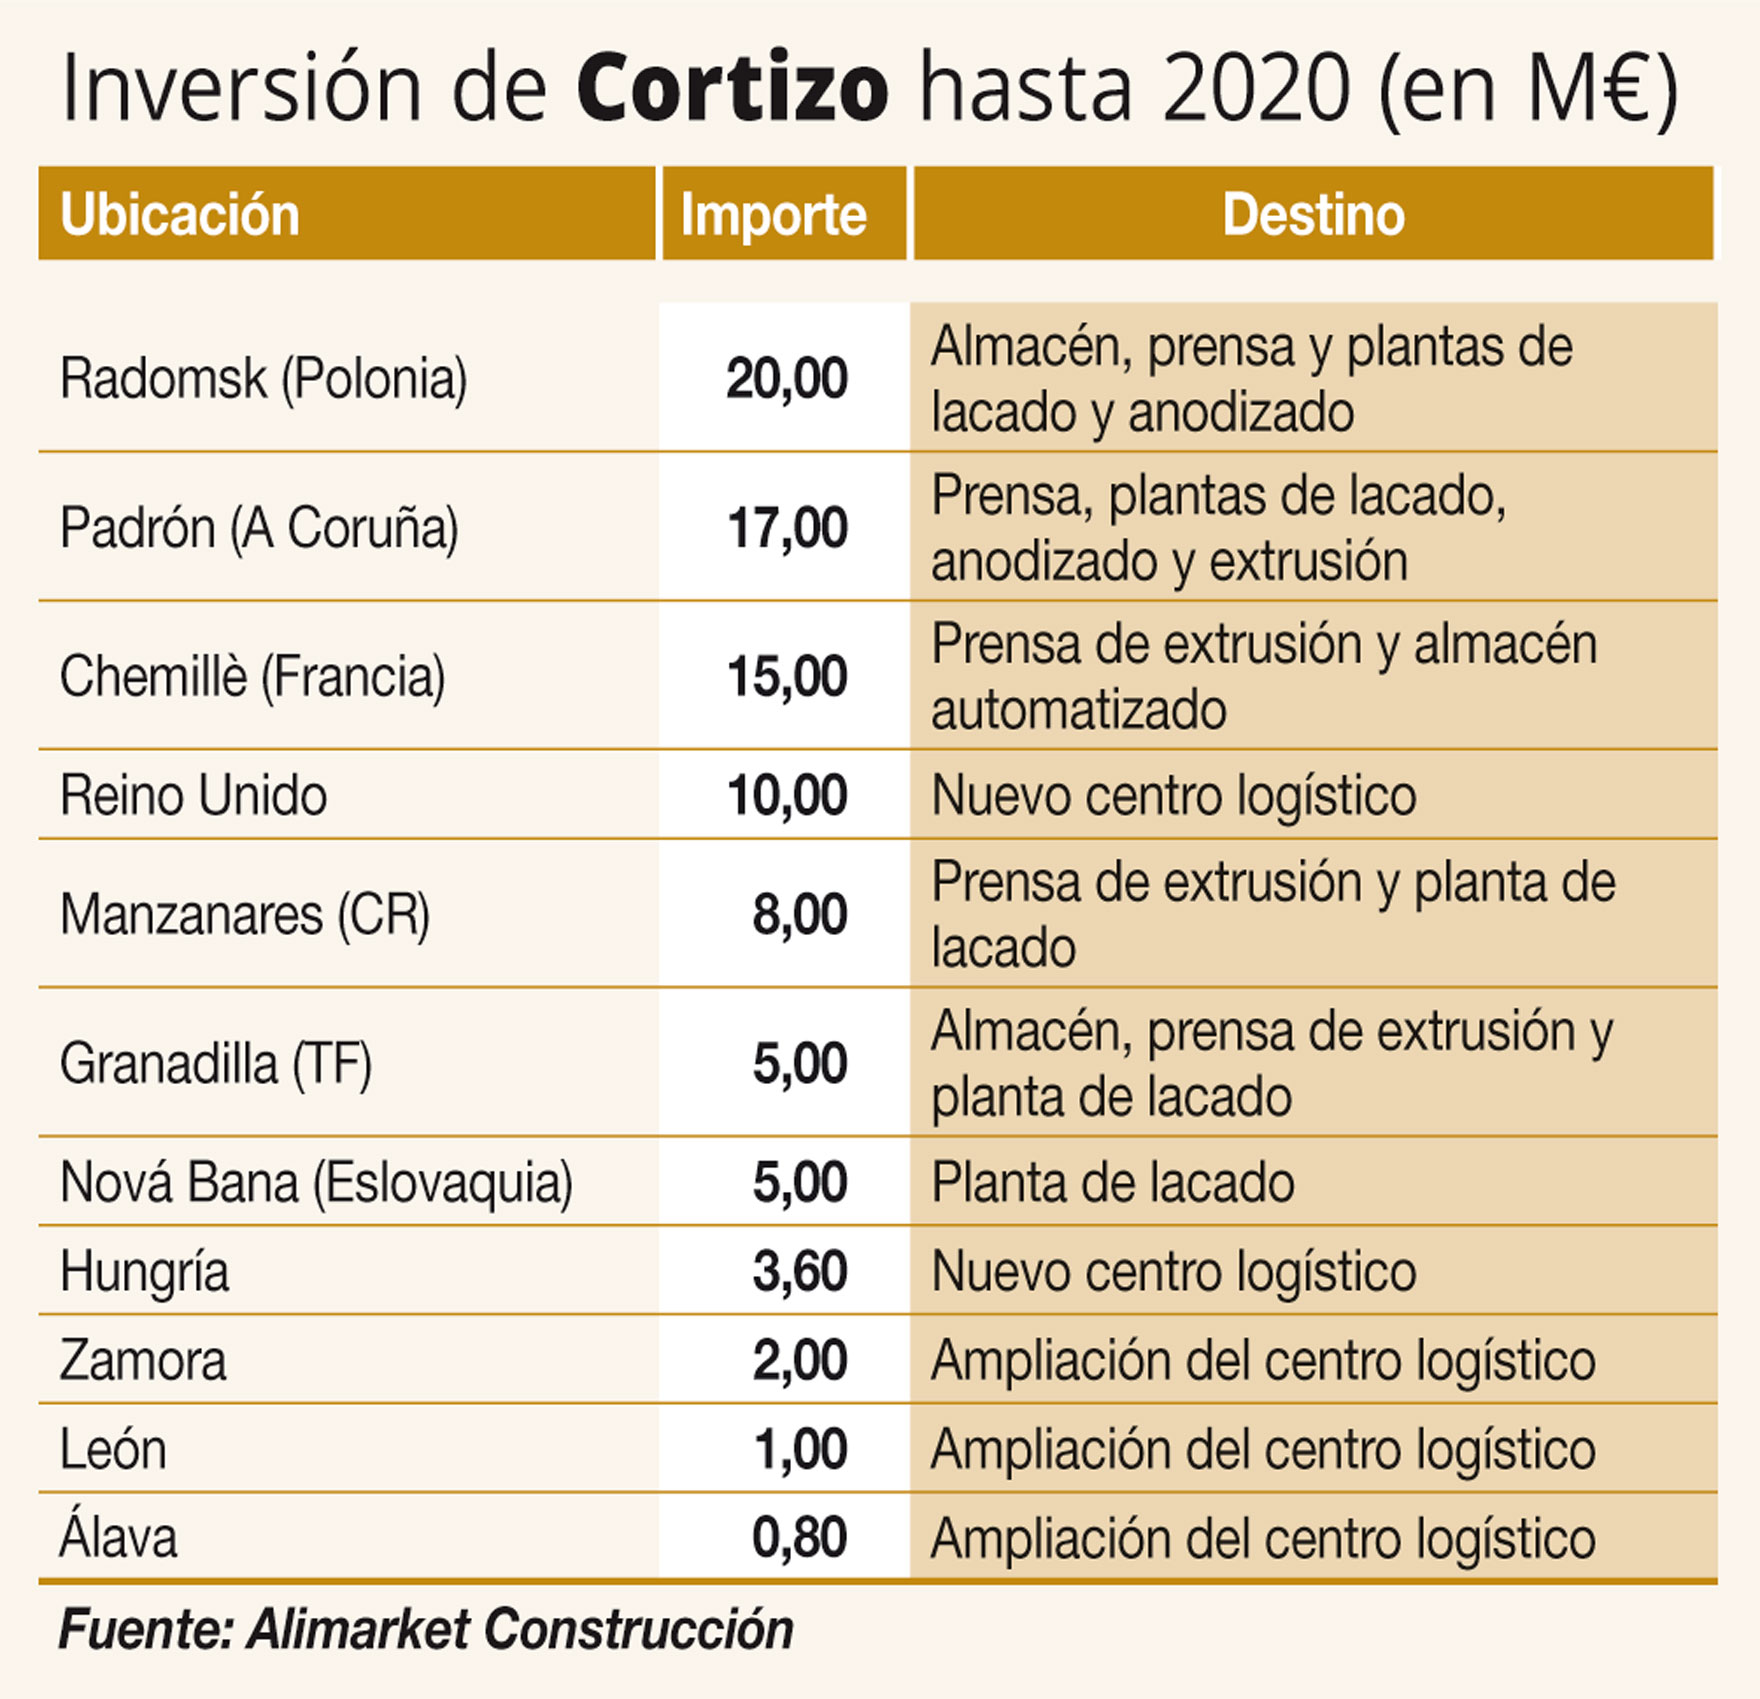 Cortizo invertirá más de 87 M€ en la ampliación de sus fábricas